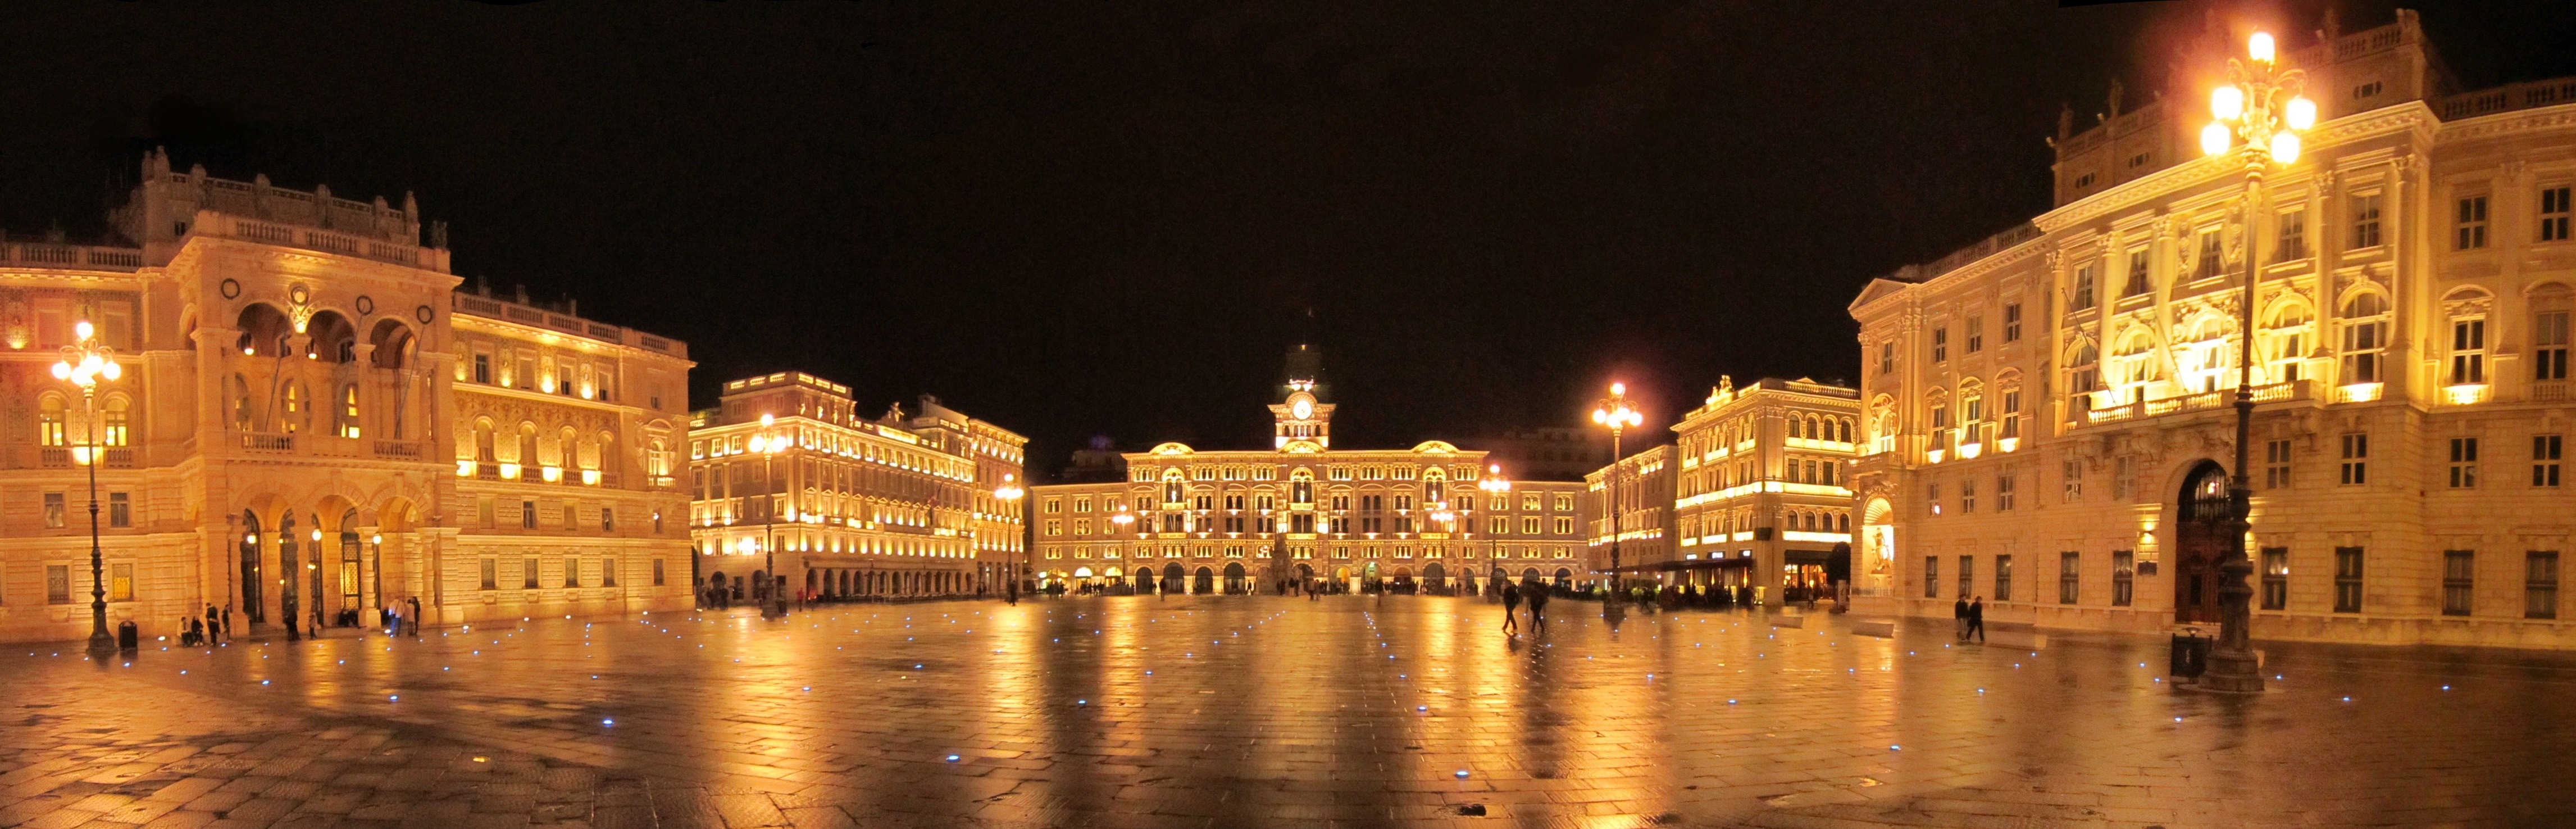 Piazza Unità d'Italia, Trieste main suqare